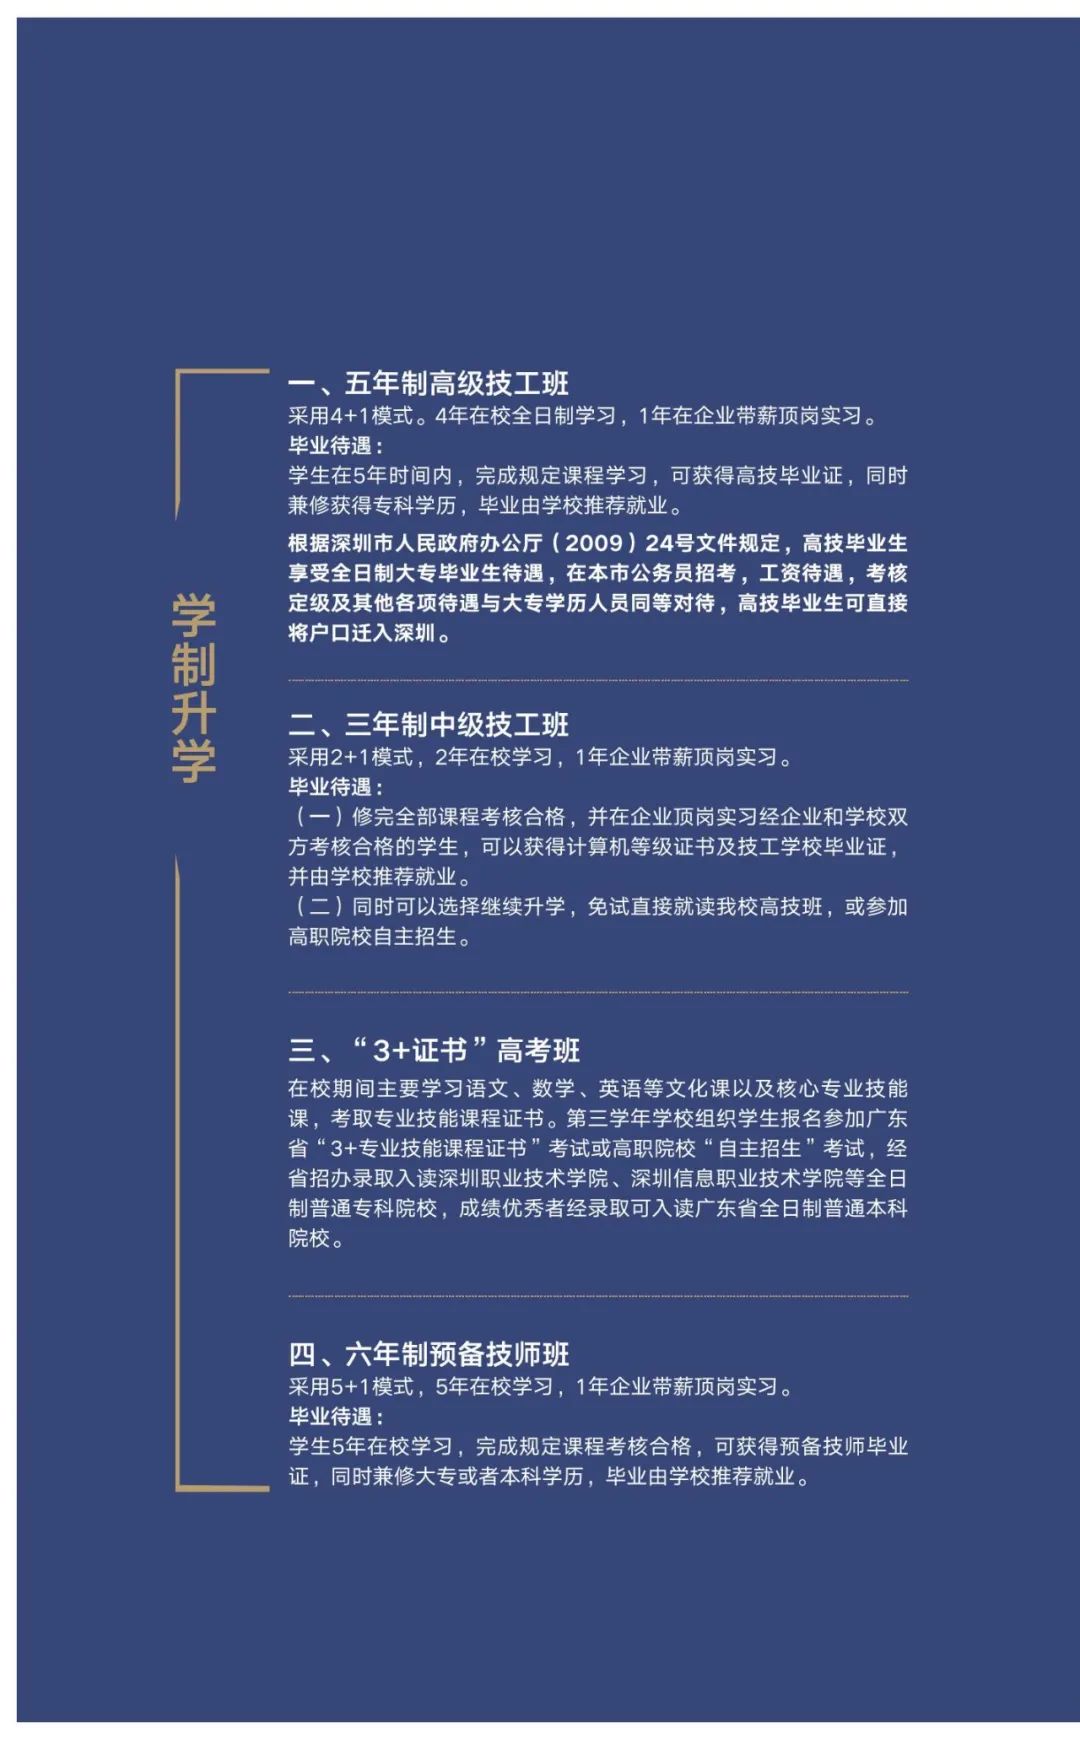 寻找追梦的你！深圳市携创高级技工学校2021秋季招生简章正式发布！